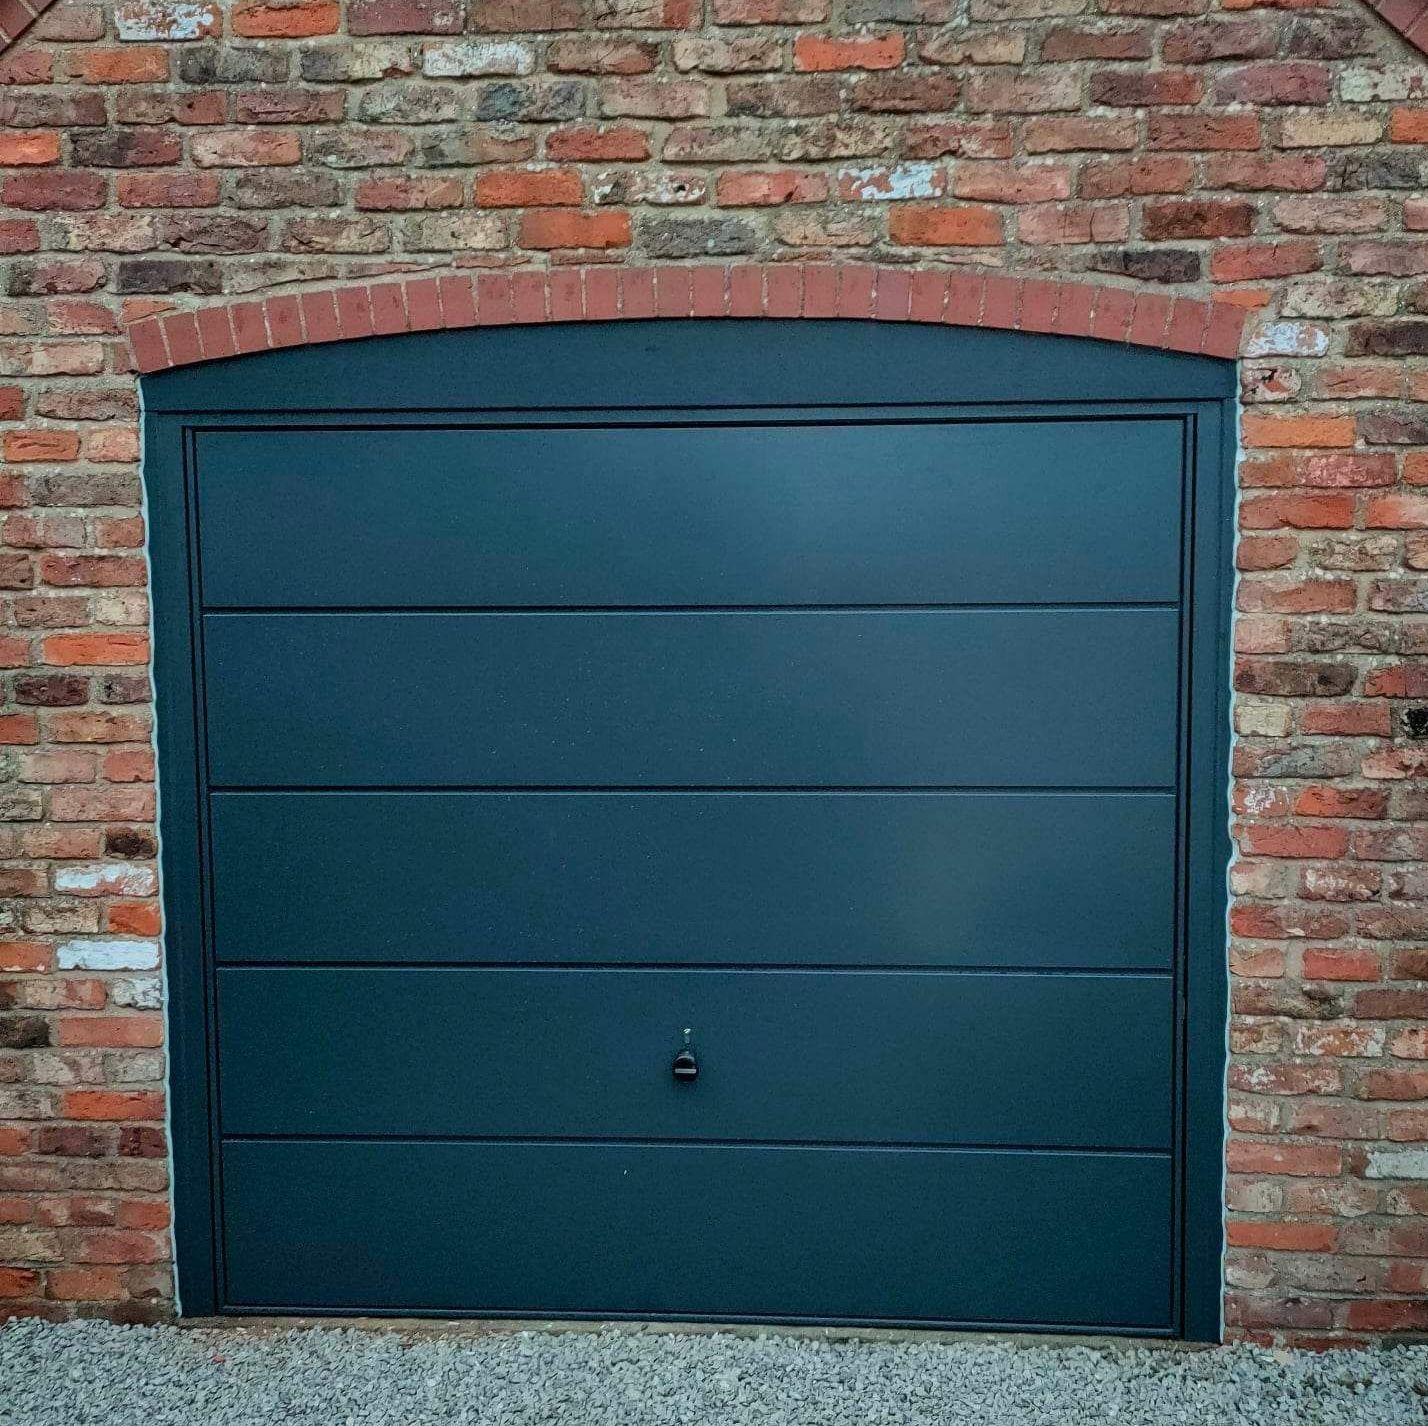 Garage doors from popular brands